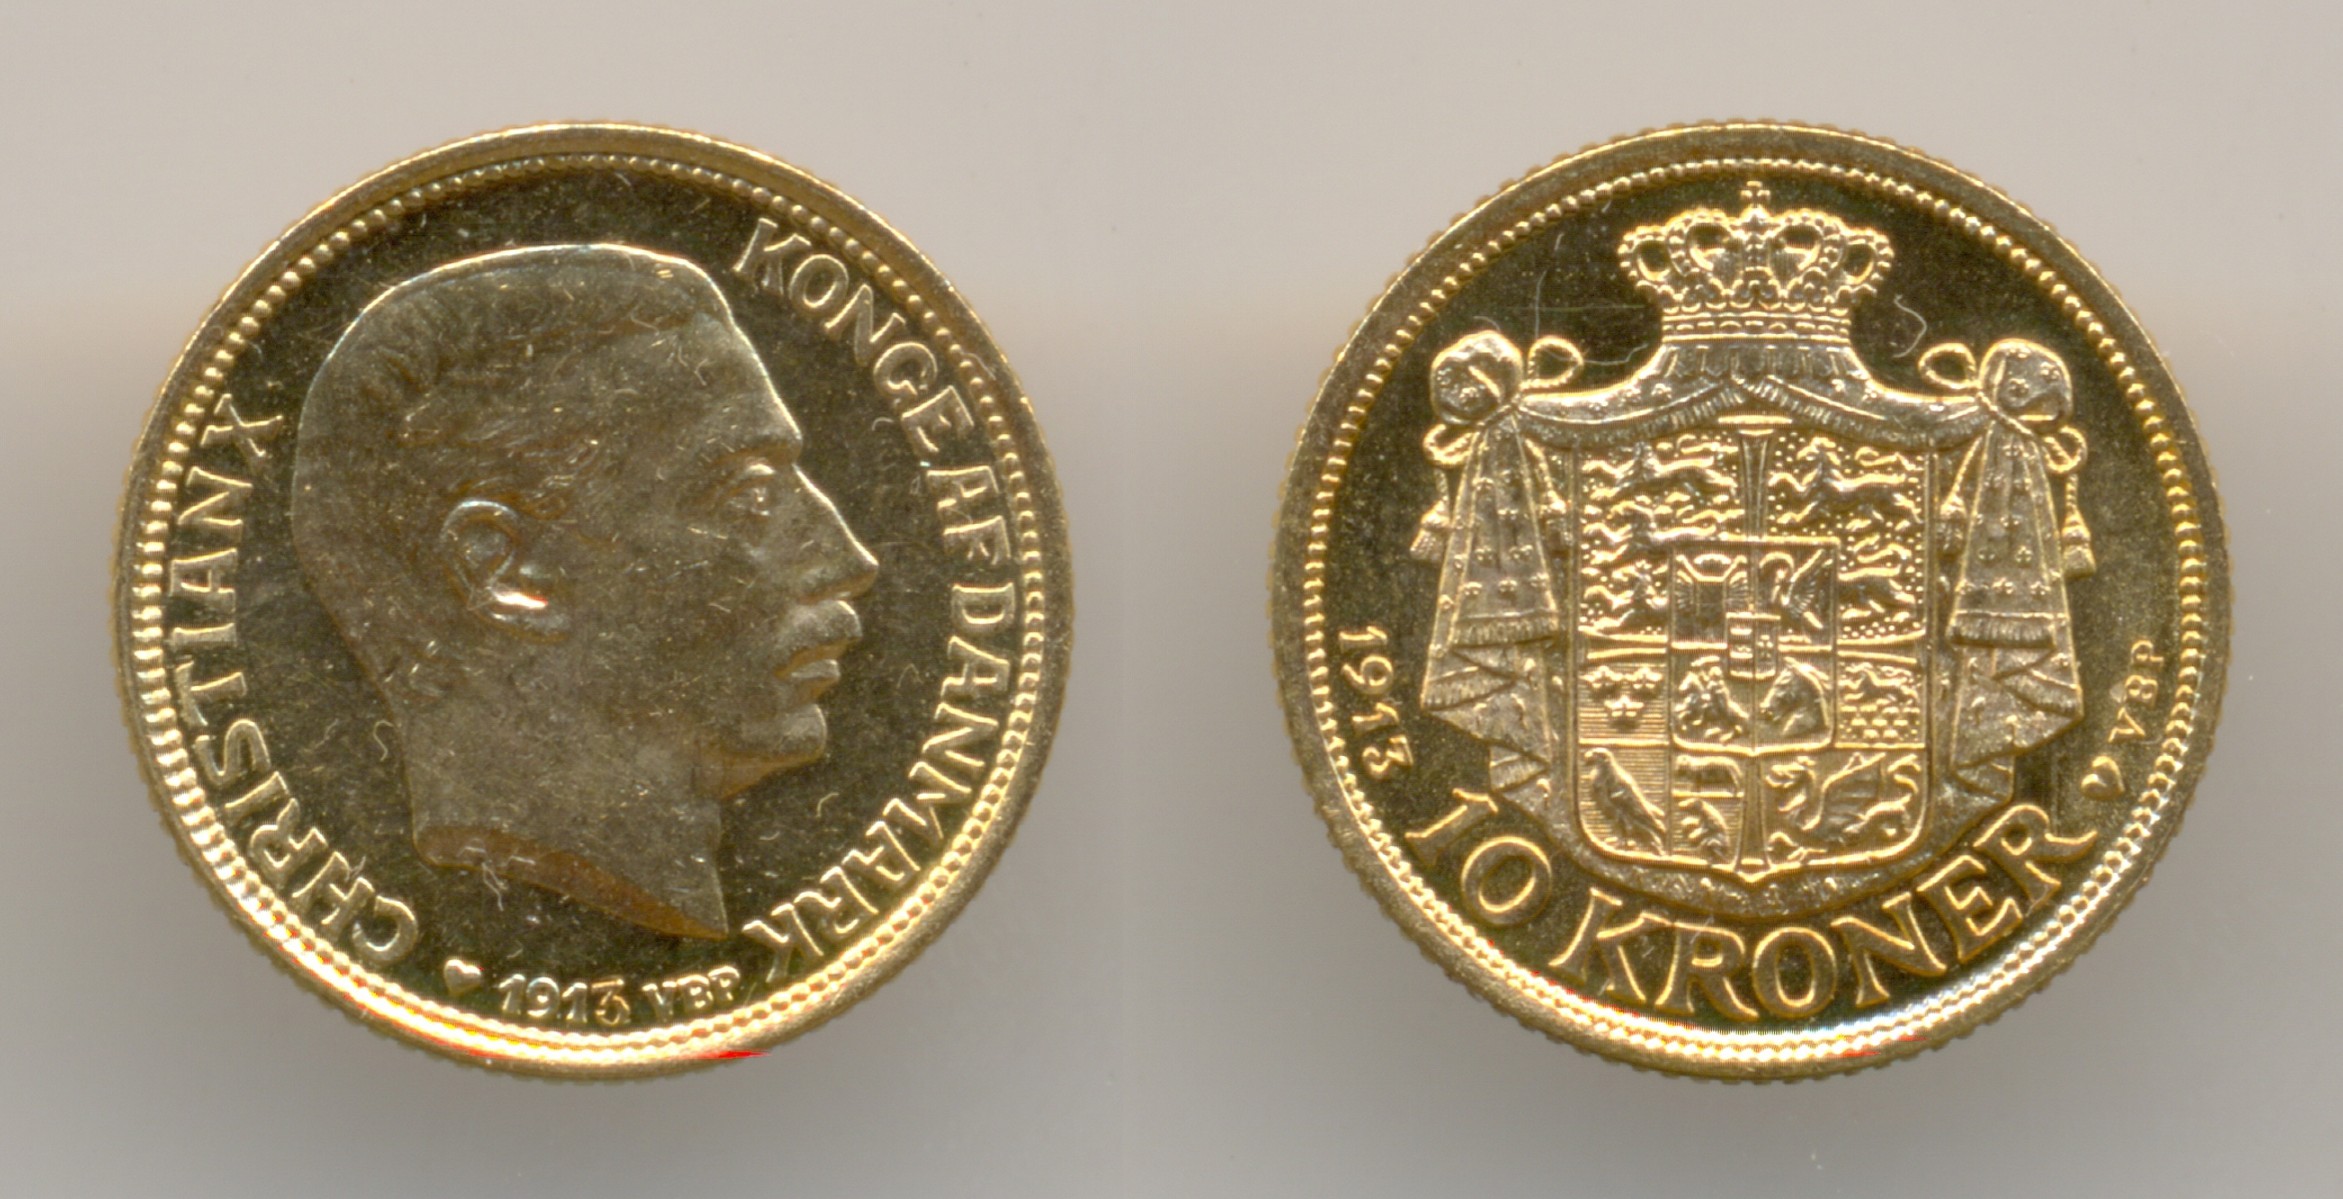 Нумизматика. Золотая монета. Дания, 10 крон 1913 г.